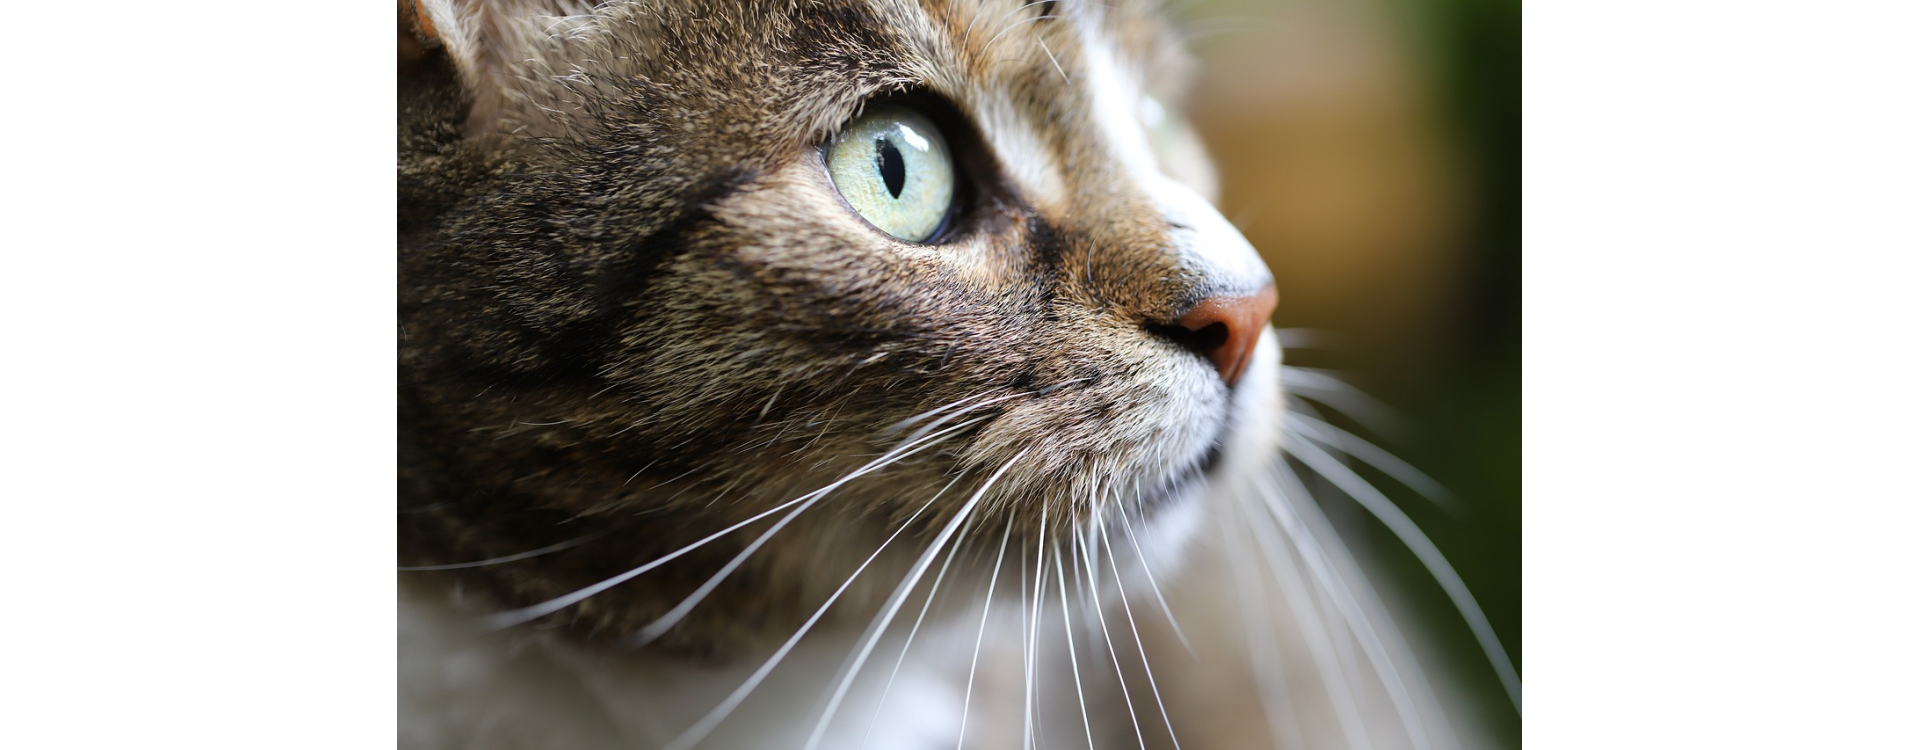 Wat kan ik doen tegen urinevlekken van katten?